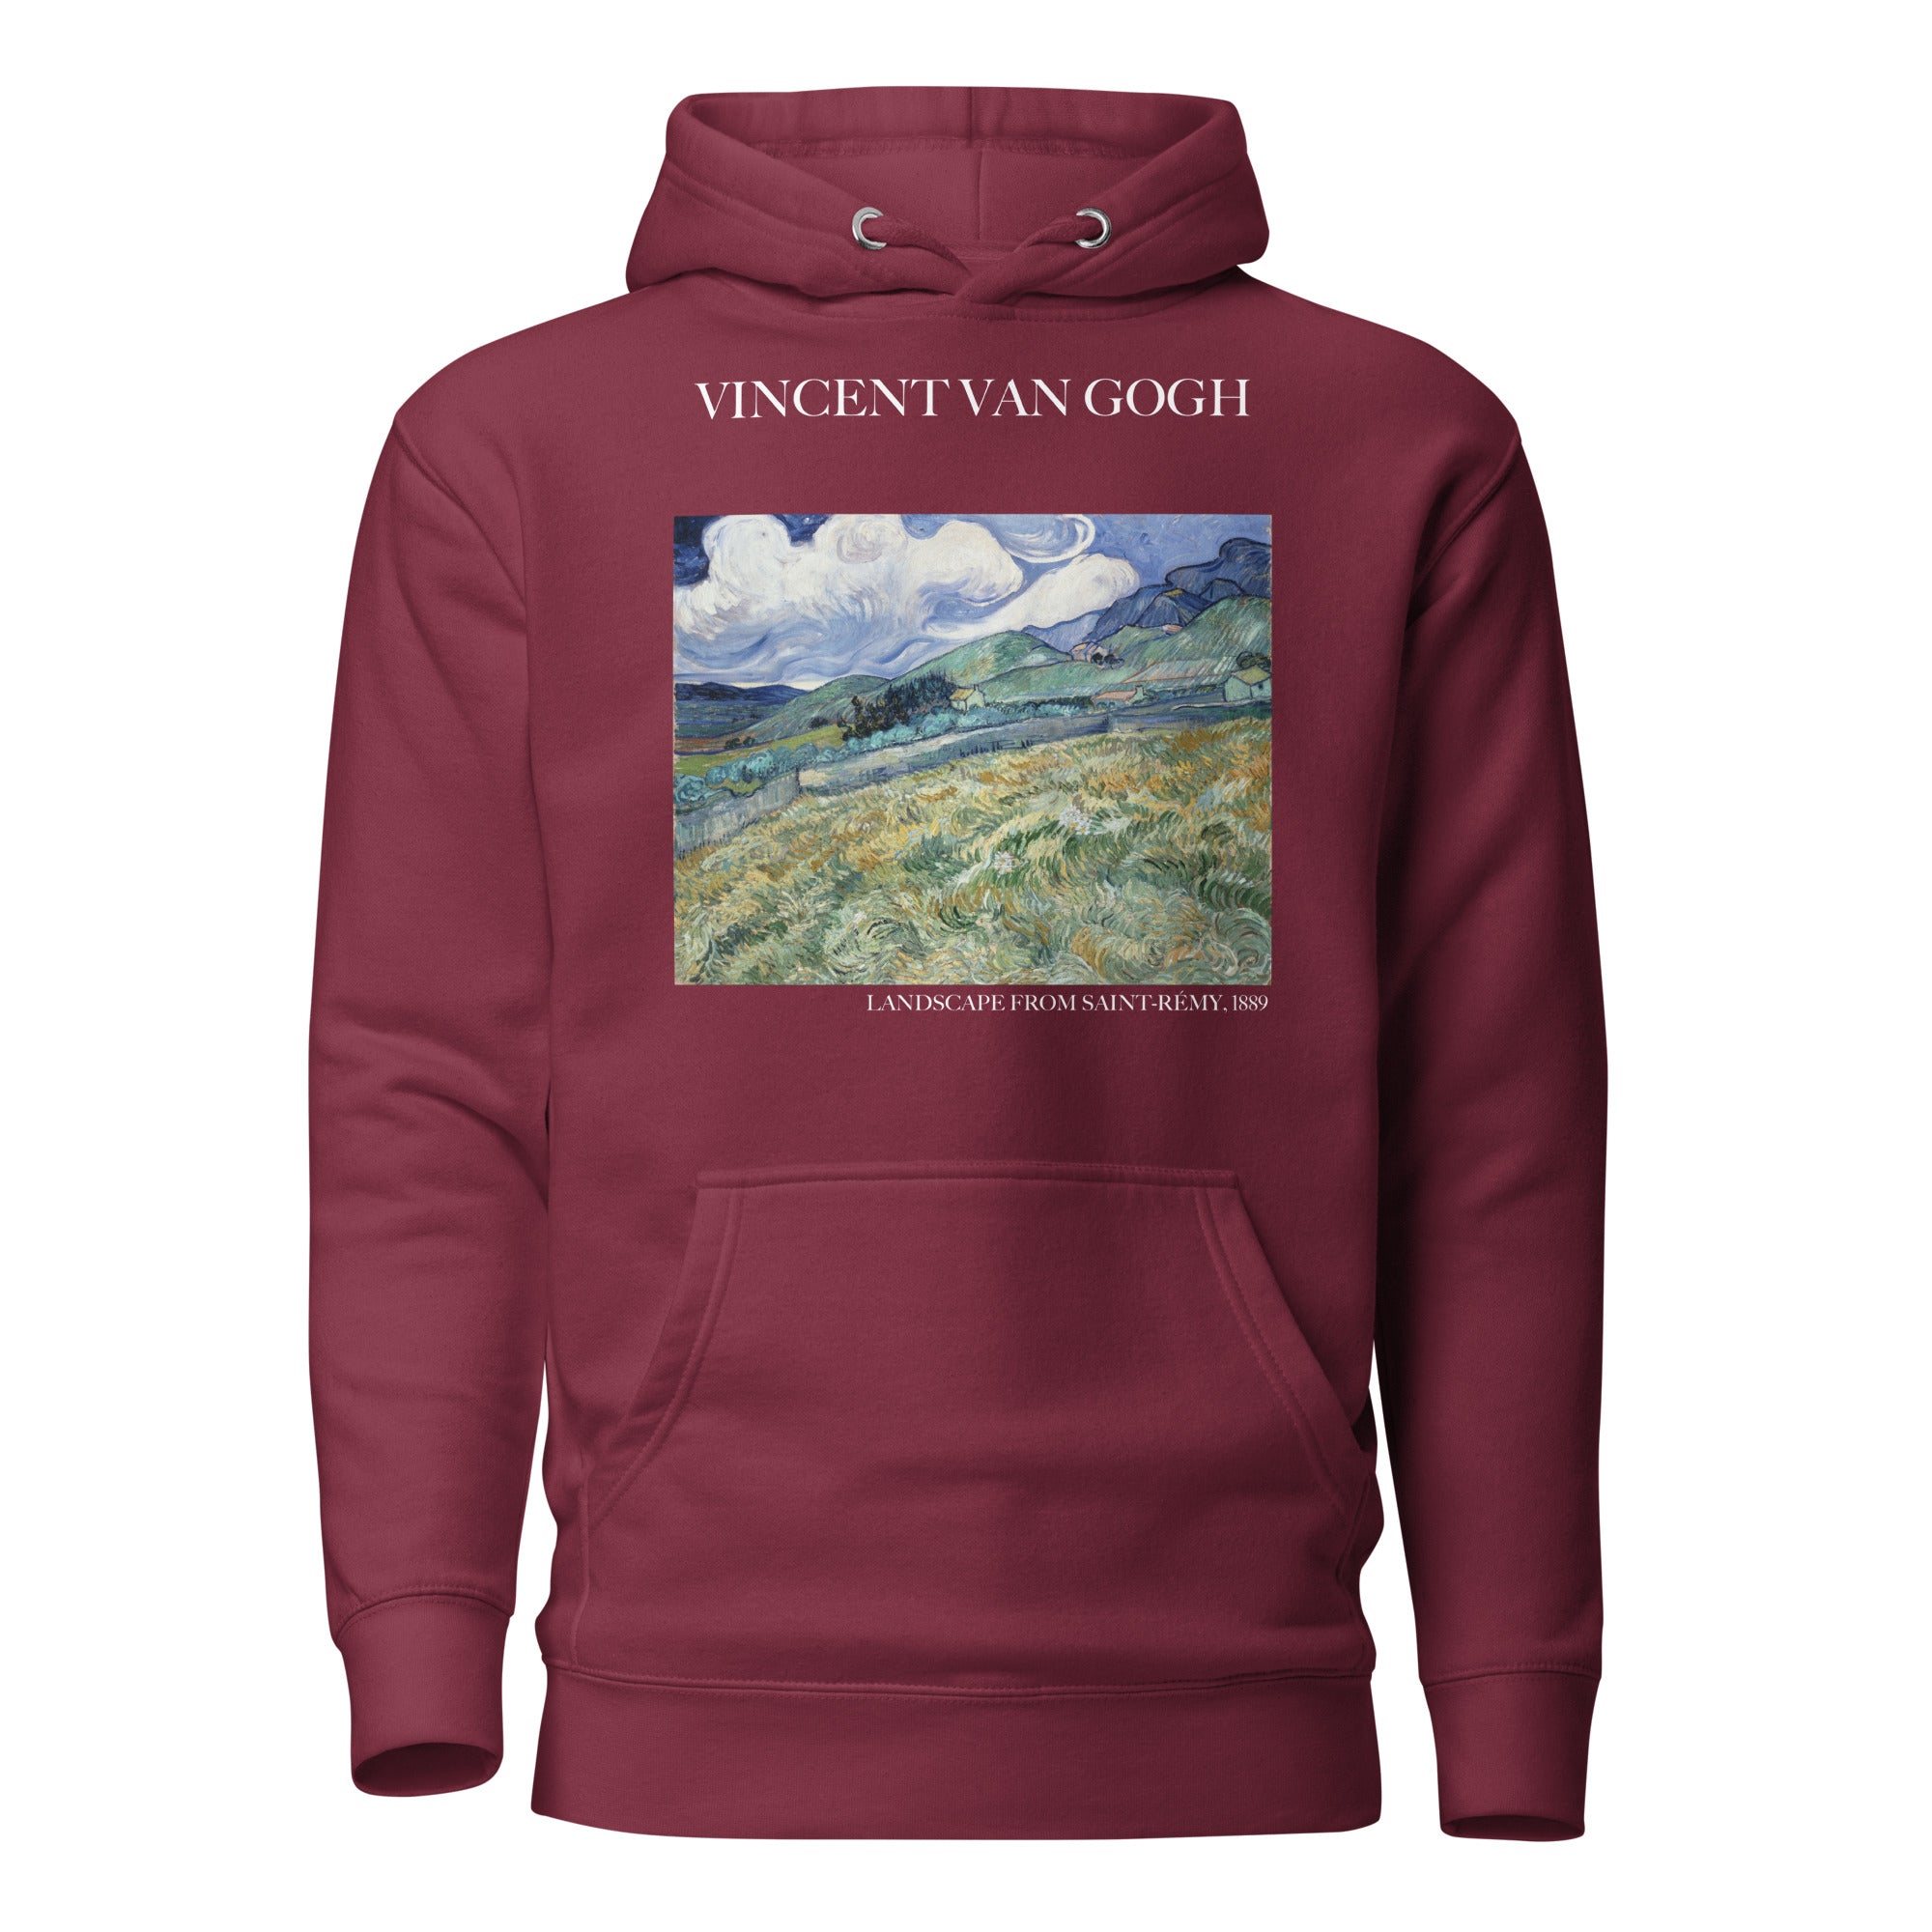 Kapuzenpullover mit berühmtem Gemälde „Landschaft von Saint-Rémy“ von Vincent van Gogh | Unisex-Kapuzenpullover mit Premium-Kunstmotiv